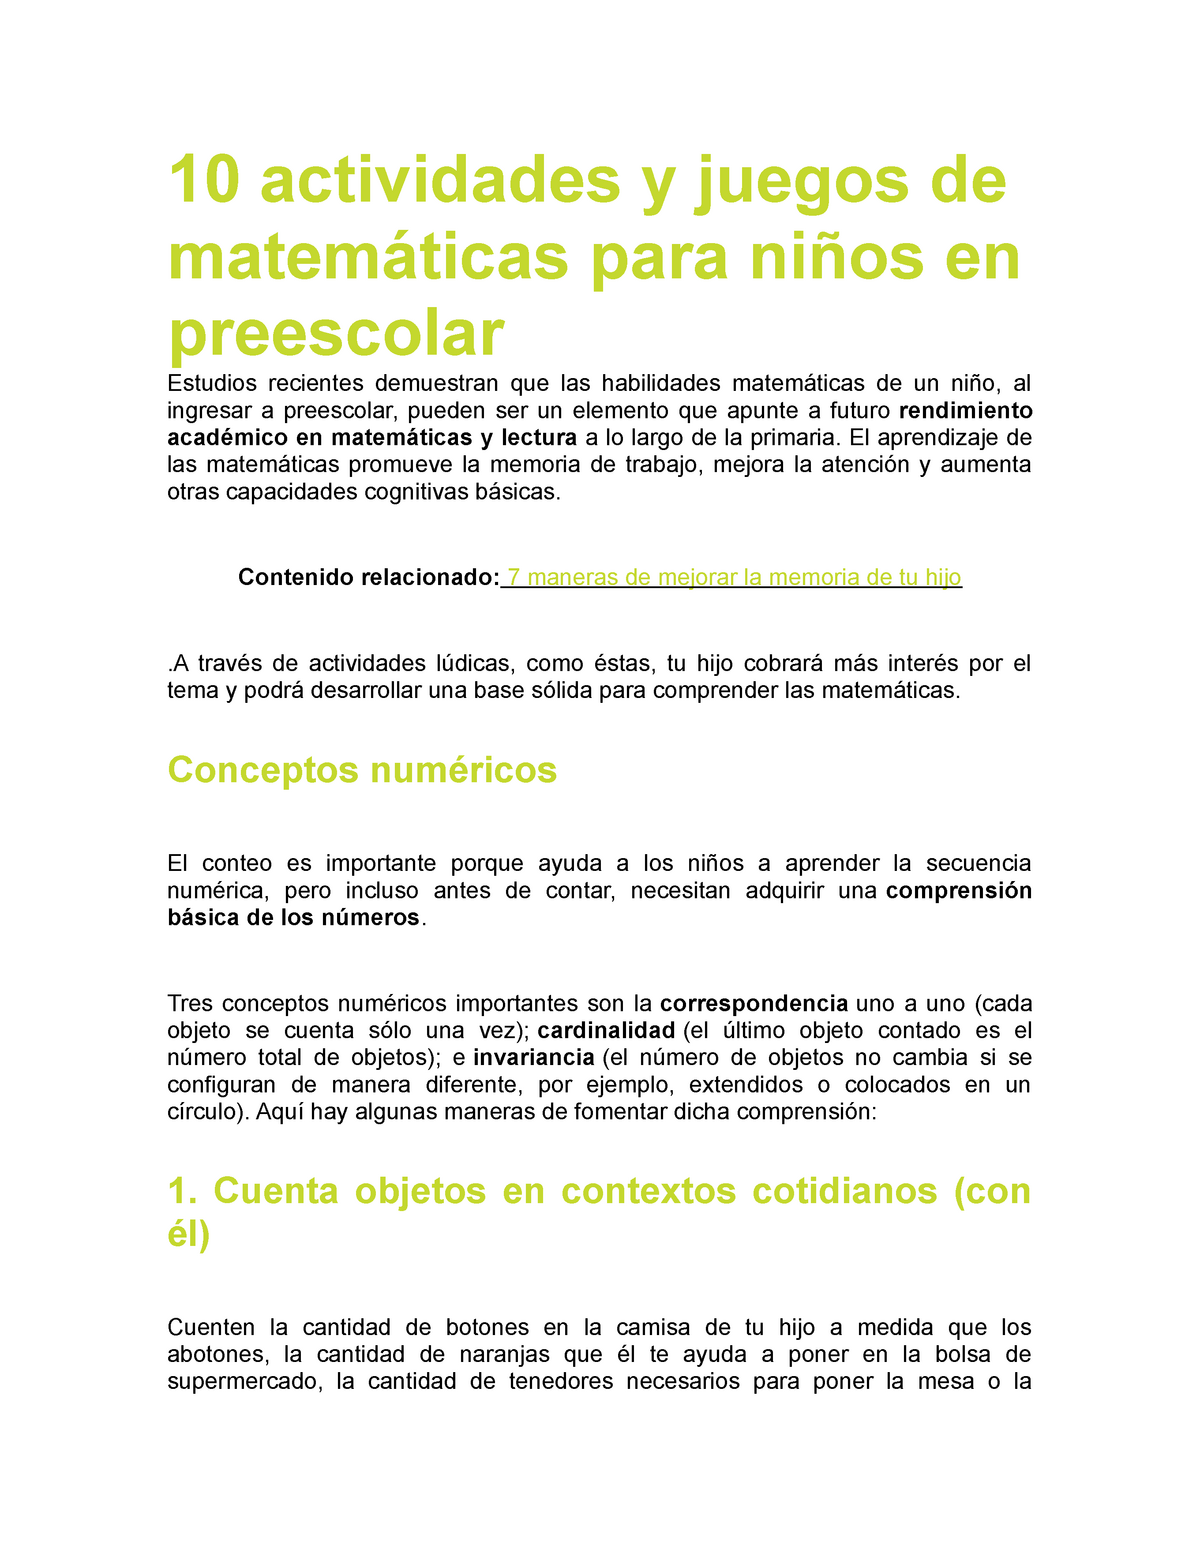 10 Actividades Y Juegos De Matematicas Para Ninos En Preescolar Studocu